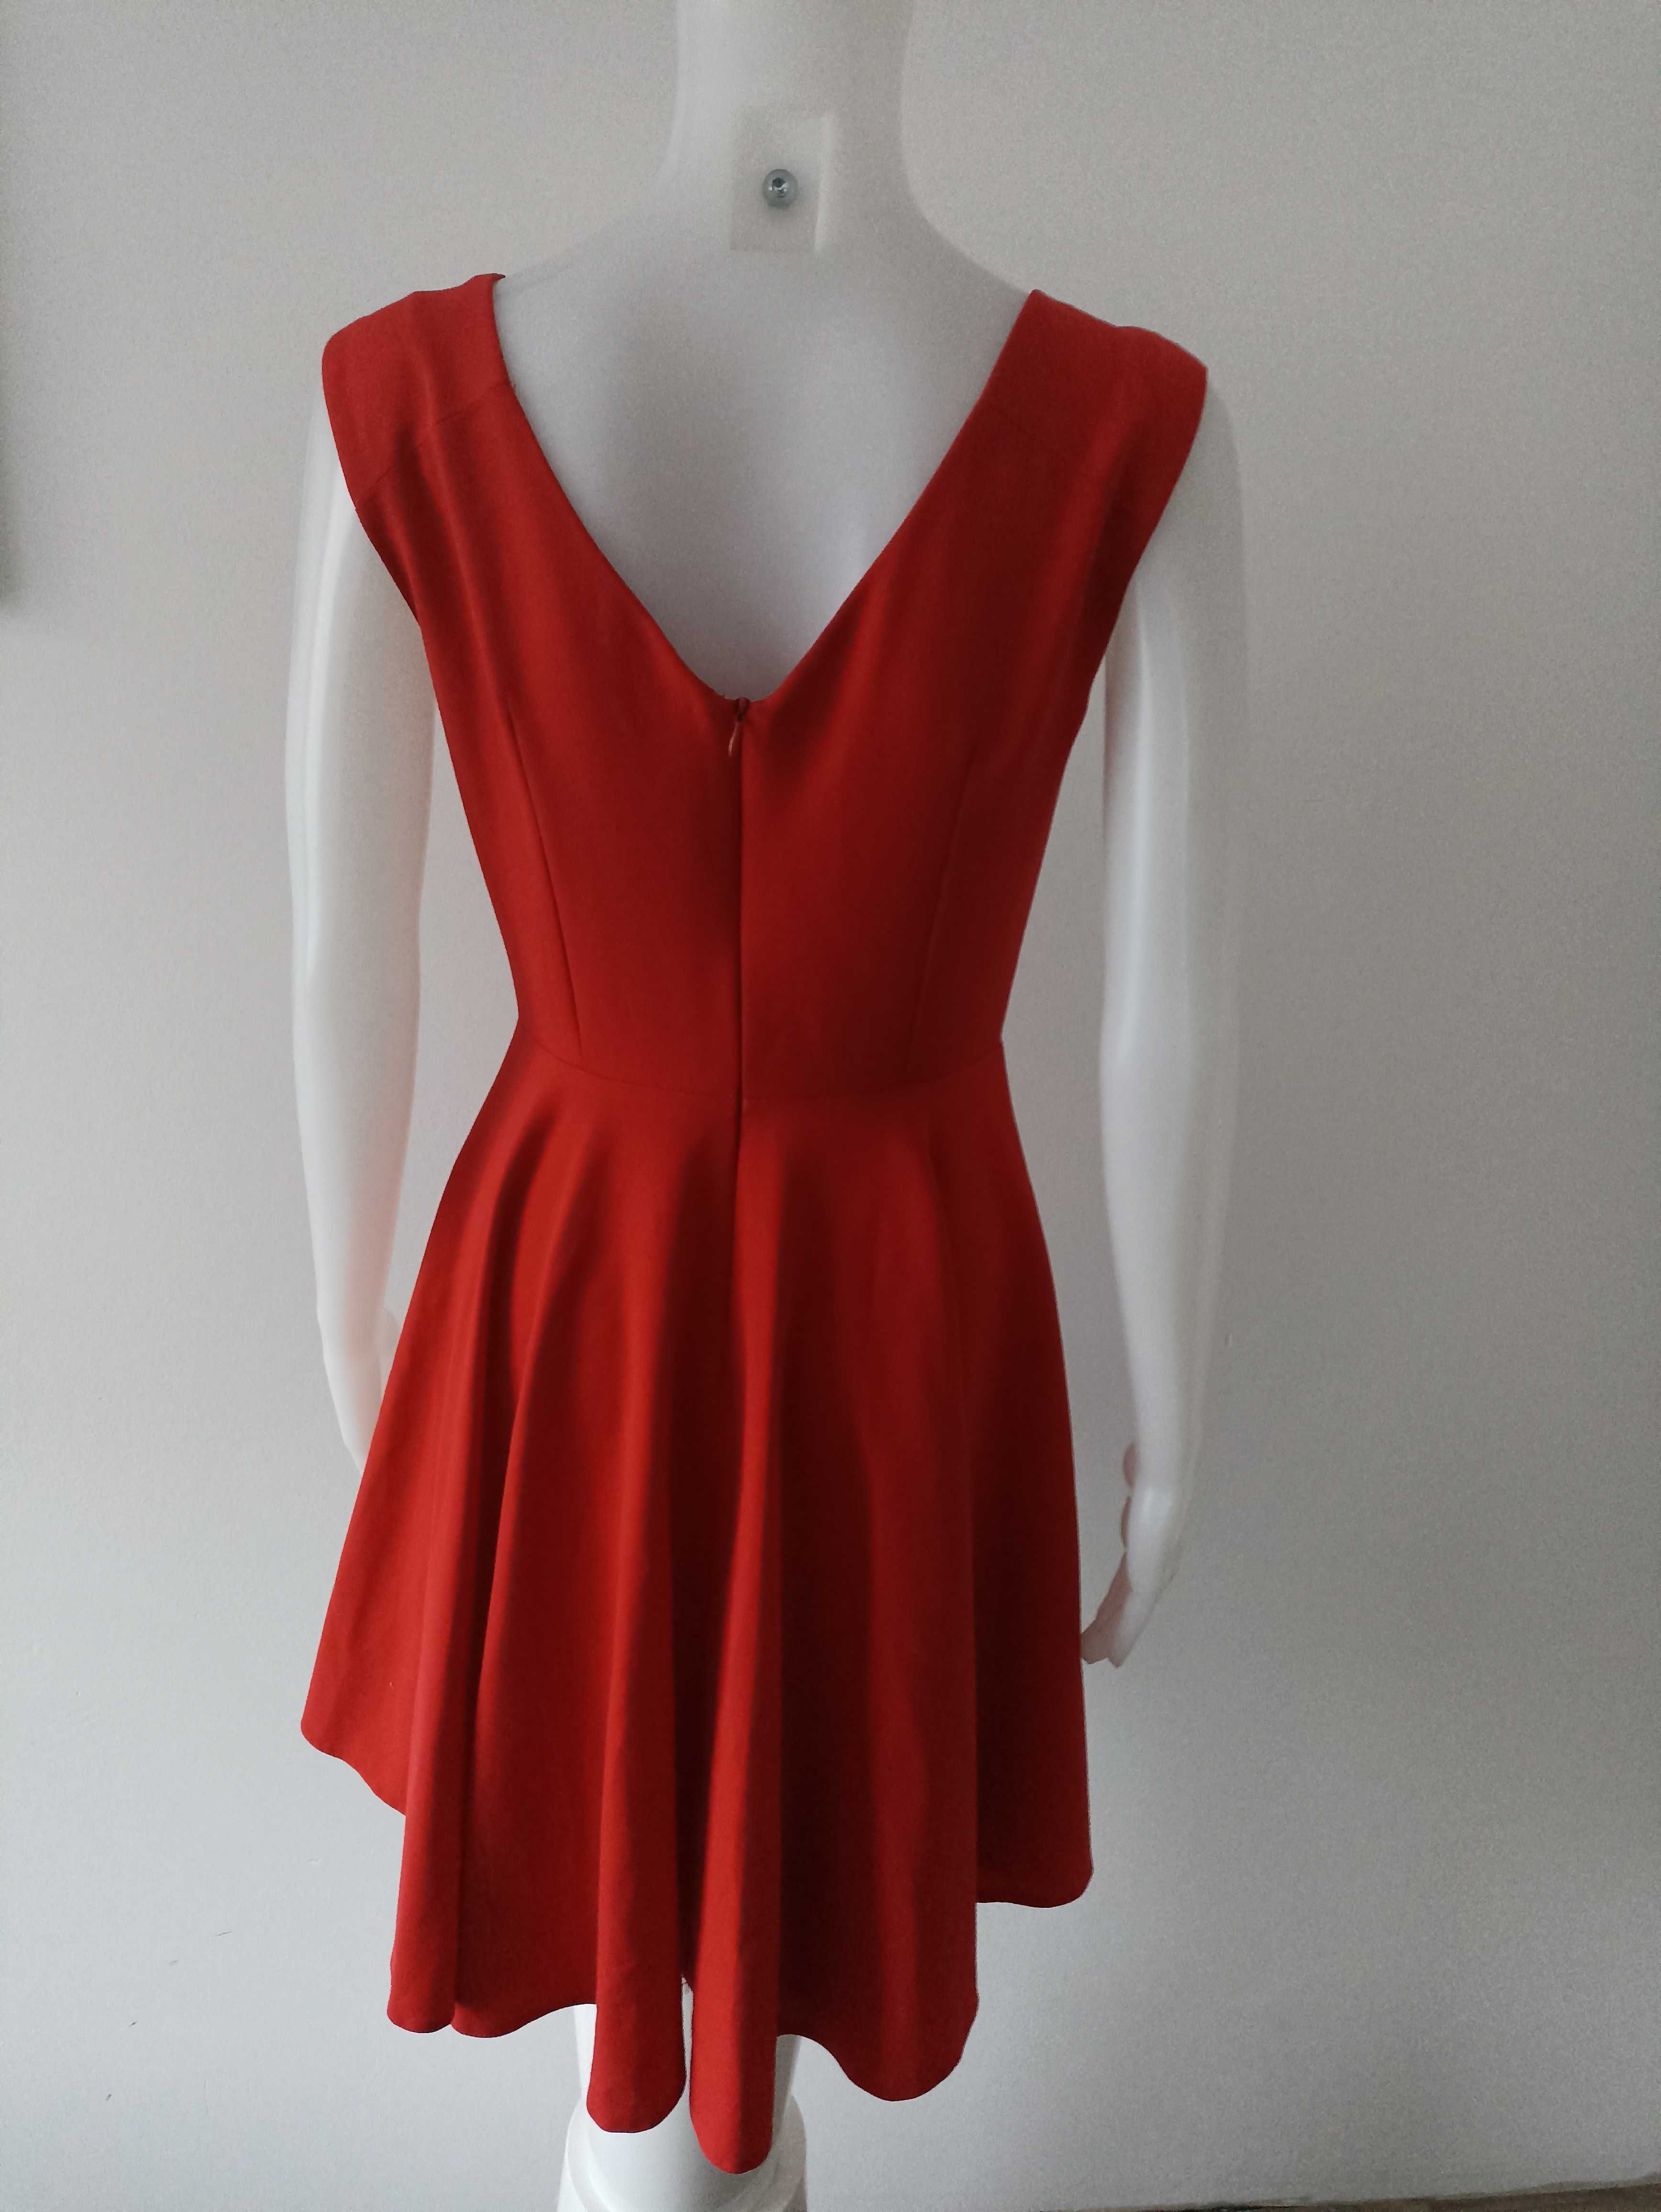 Czerwona sukienka na grubych ramiączkach J&J rozmiar 36 S